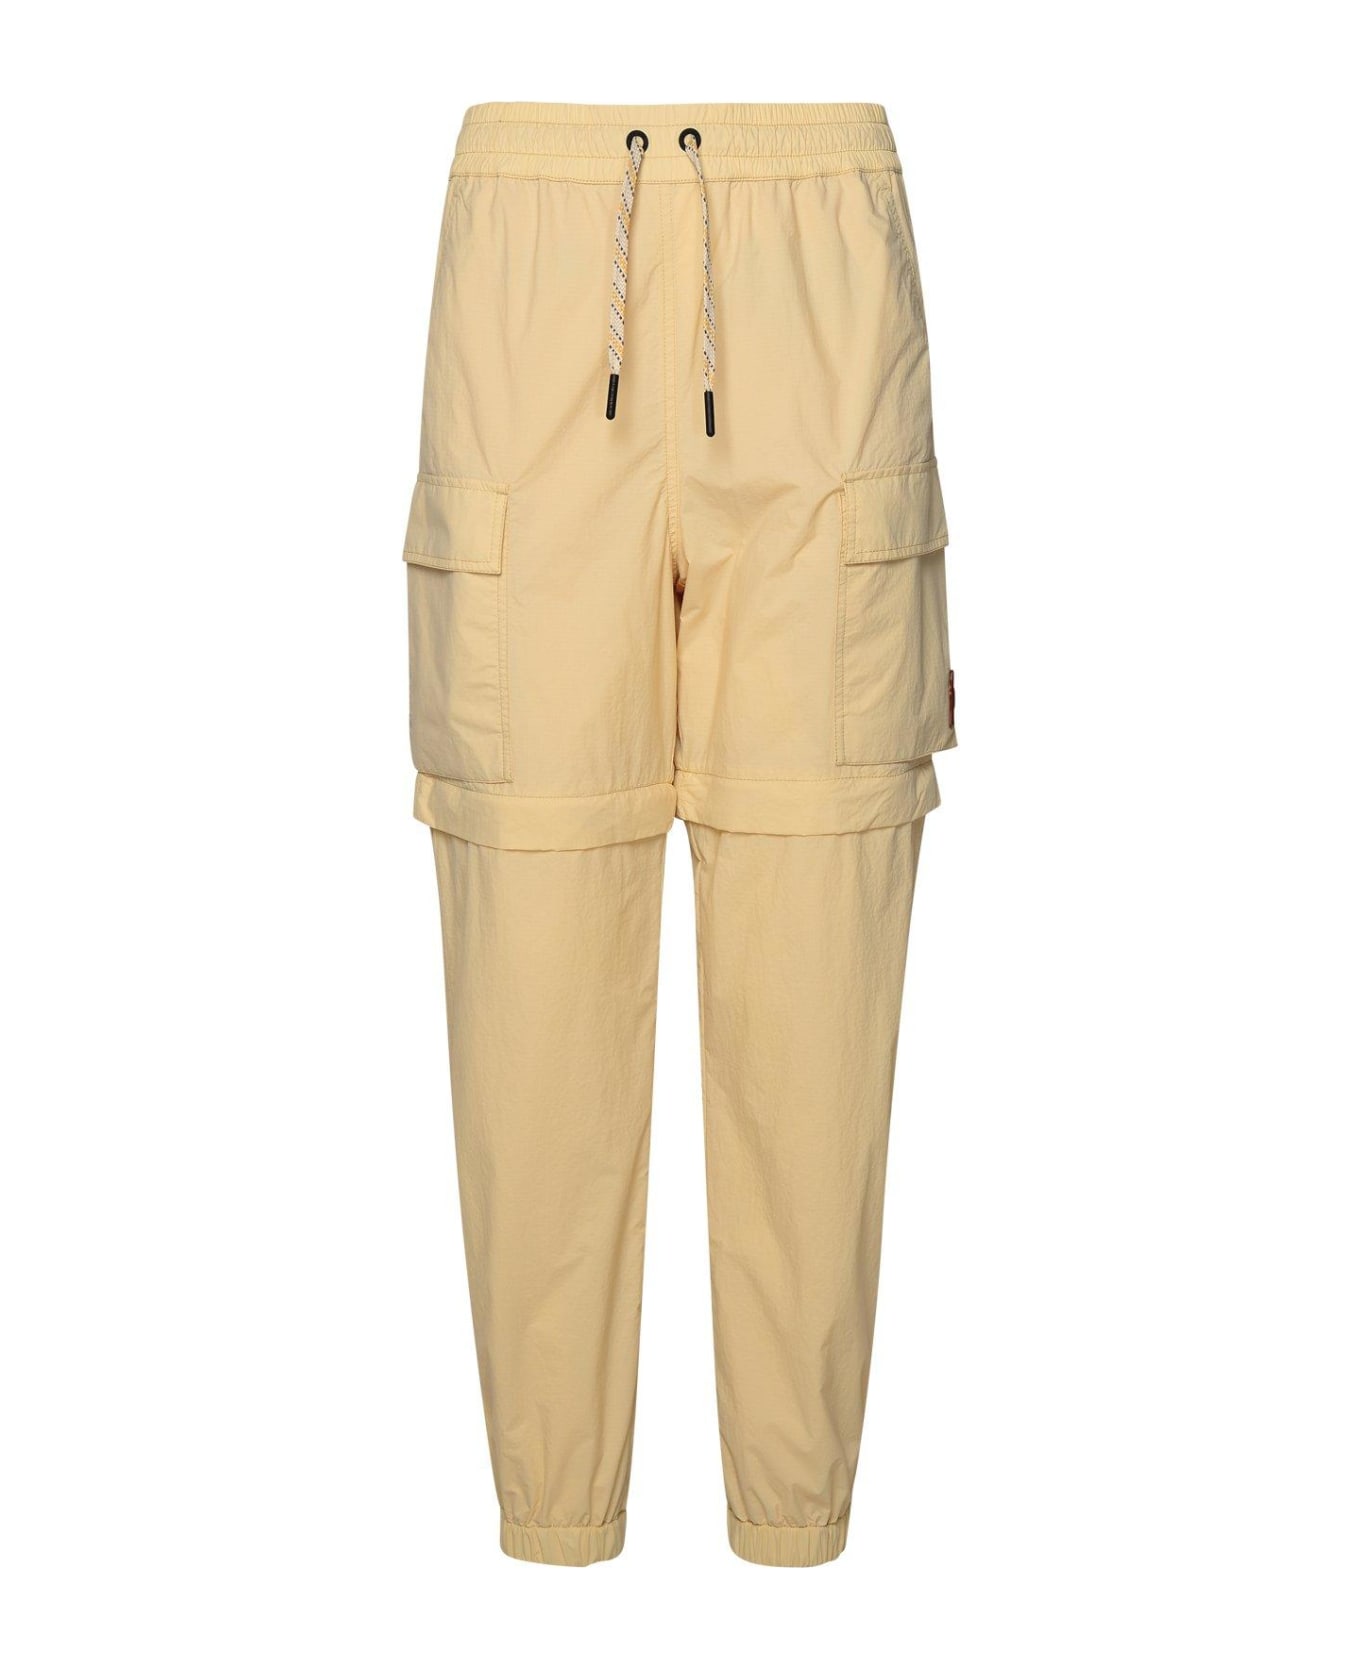 Moncler Grenoble Pocket Detailed Cargo Trousers スウェットパンツ